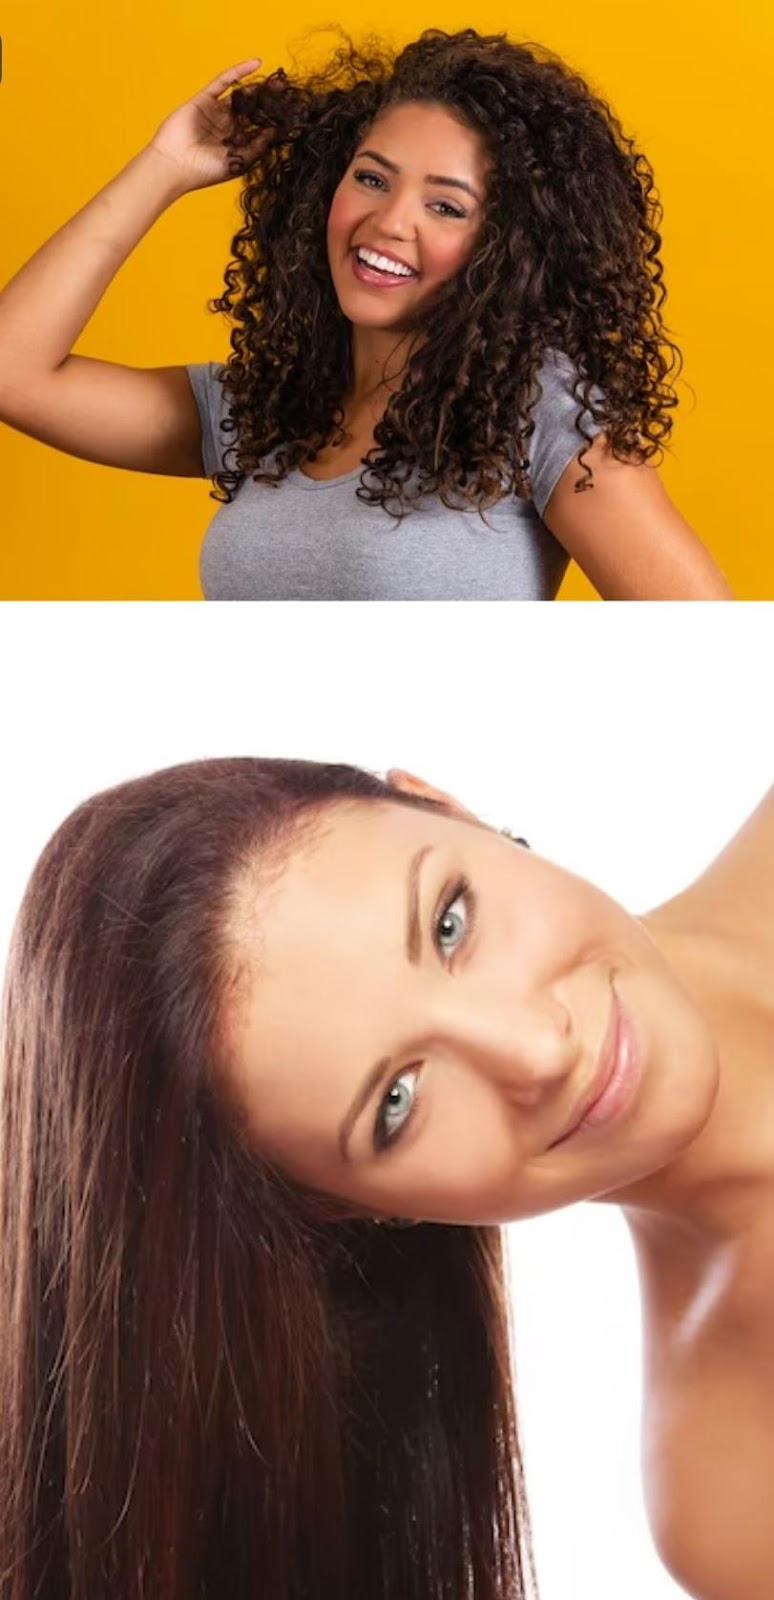 Бразильское выпрямление волос: плюсы и минусы